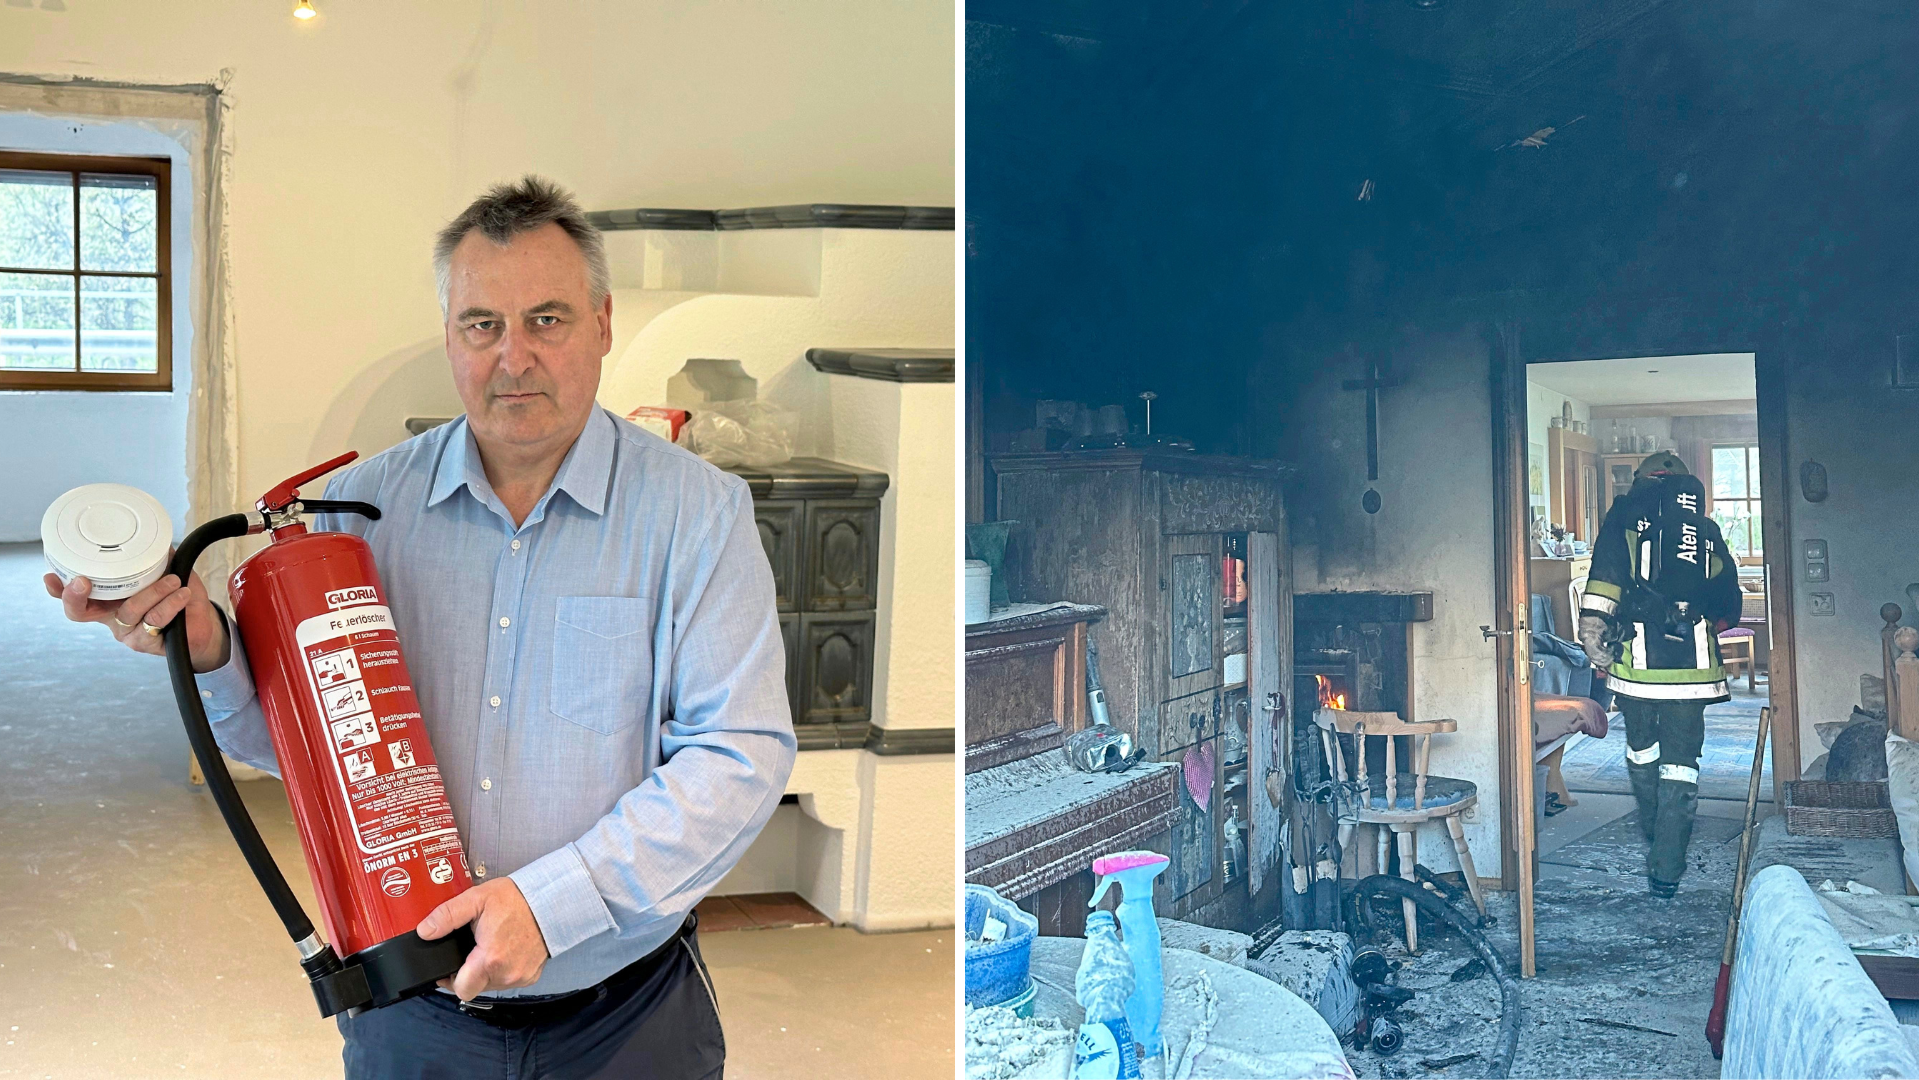 Martin Reiter mit Feuerlöscher und Warnmelder in seinem „Rohbau“. Anfang März hatte es in seinem Haus gebrannt. (Bild: zoom.tirol)